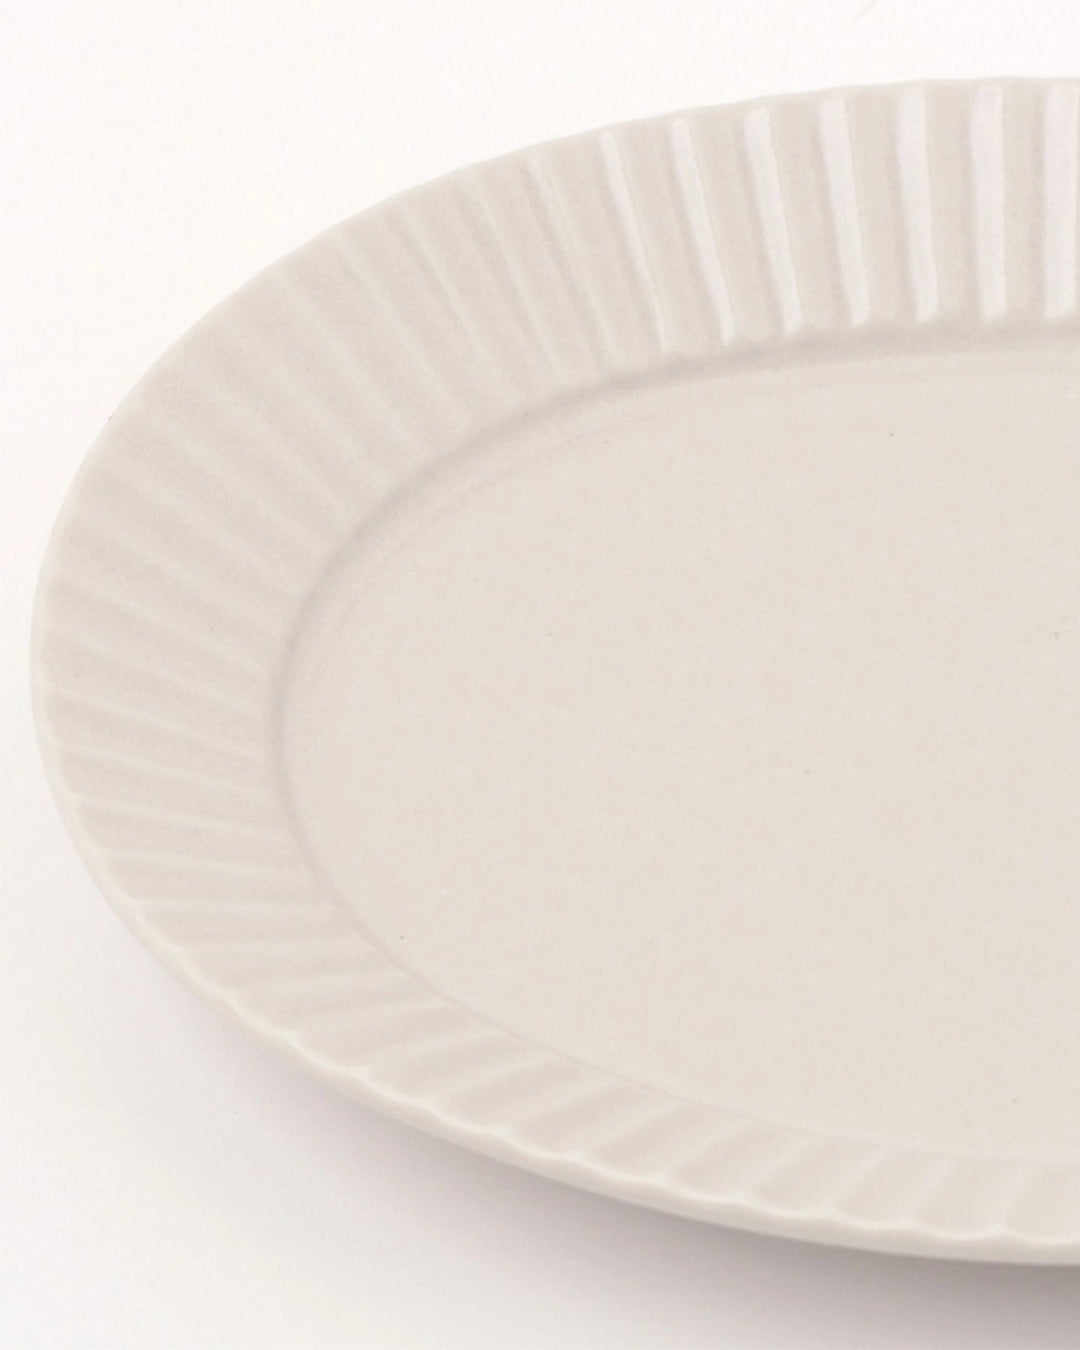 Lakole Mino Ware Small Oval Platter - White